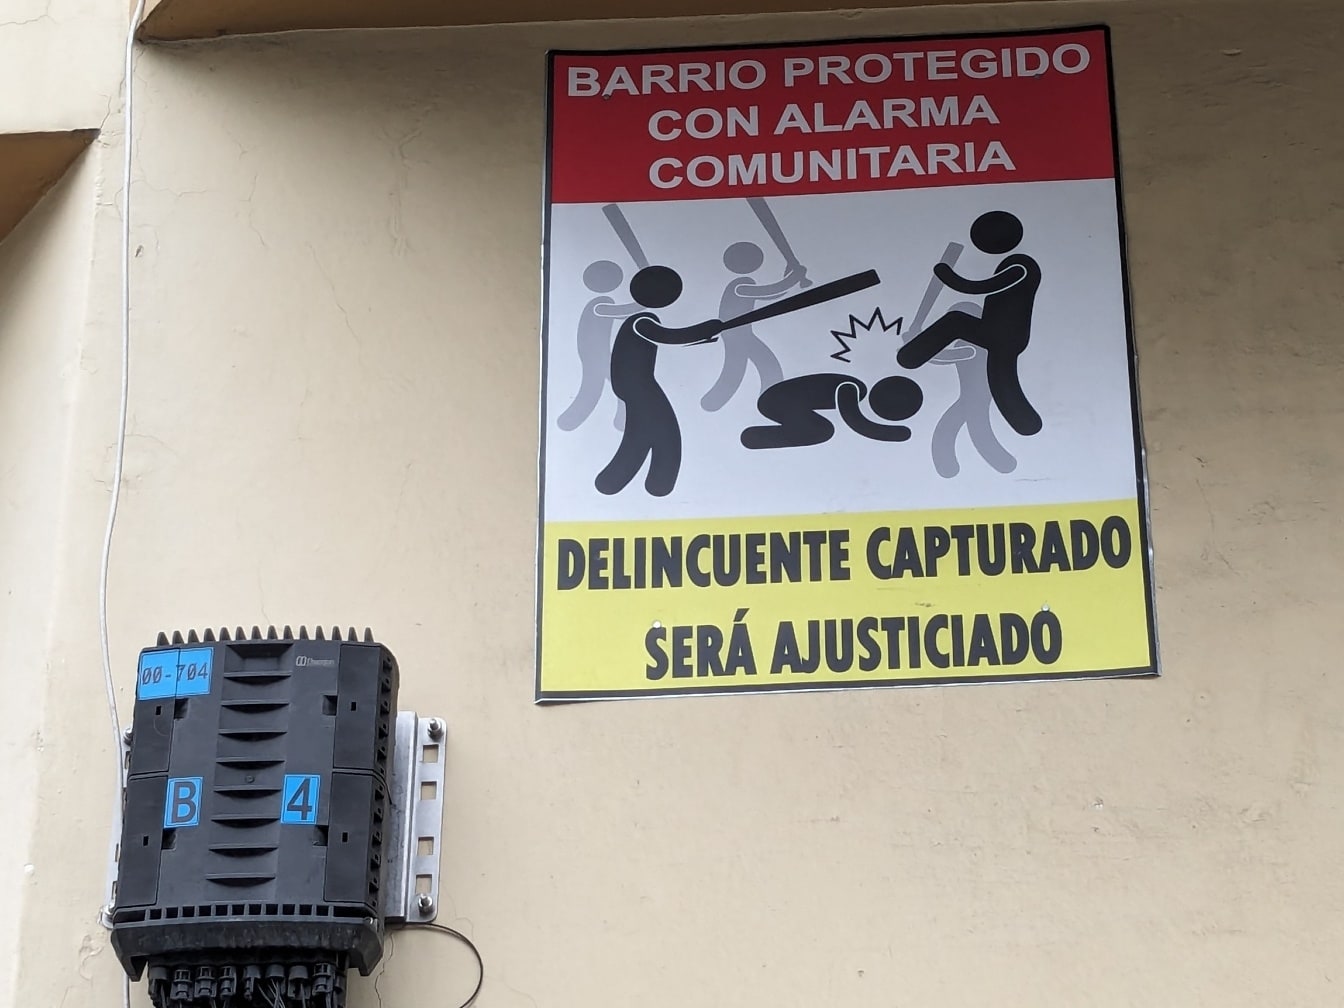 Advarselsskilt mod kriminelle og banditter med en spansksproget inskription på væggen